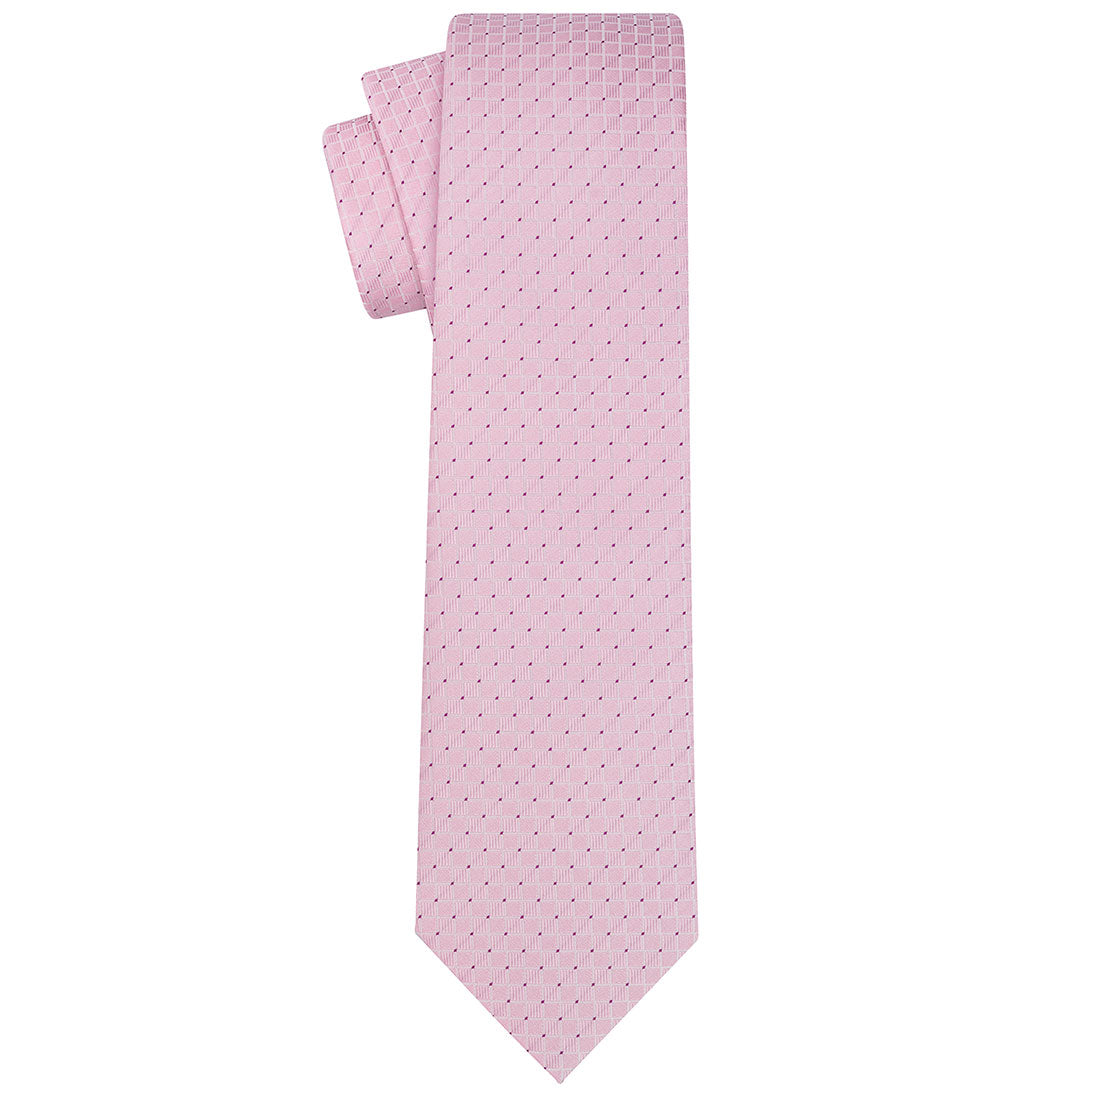 Cinderella Pink Checkered Tie - Tie, bowtie, pocket square  | Kissties